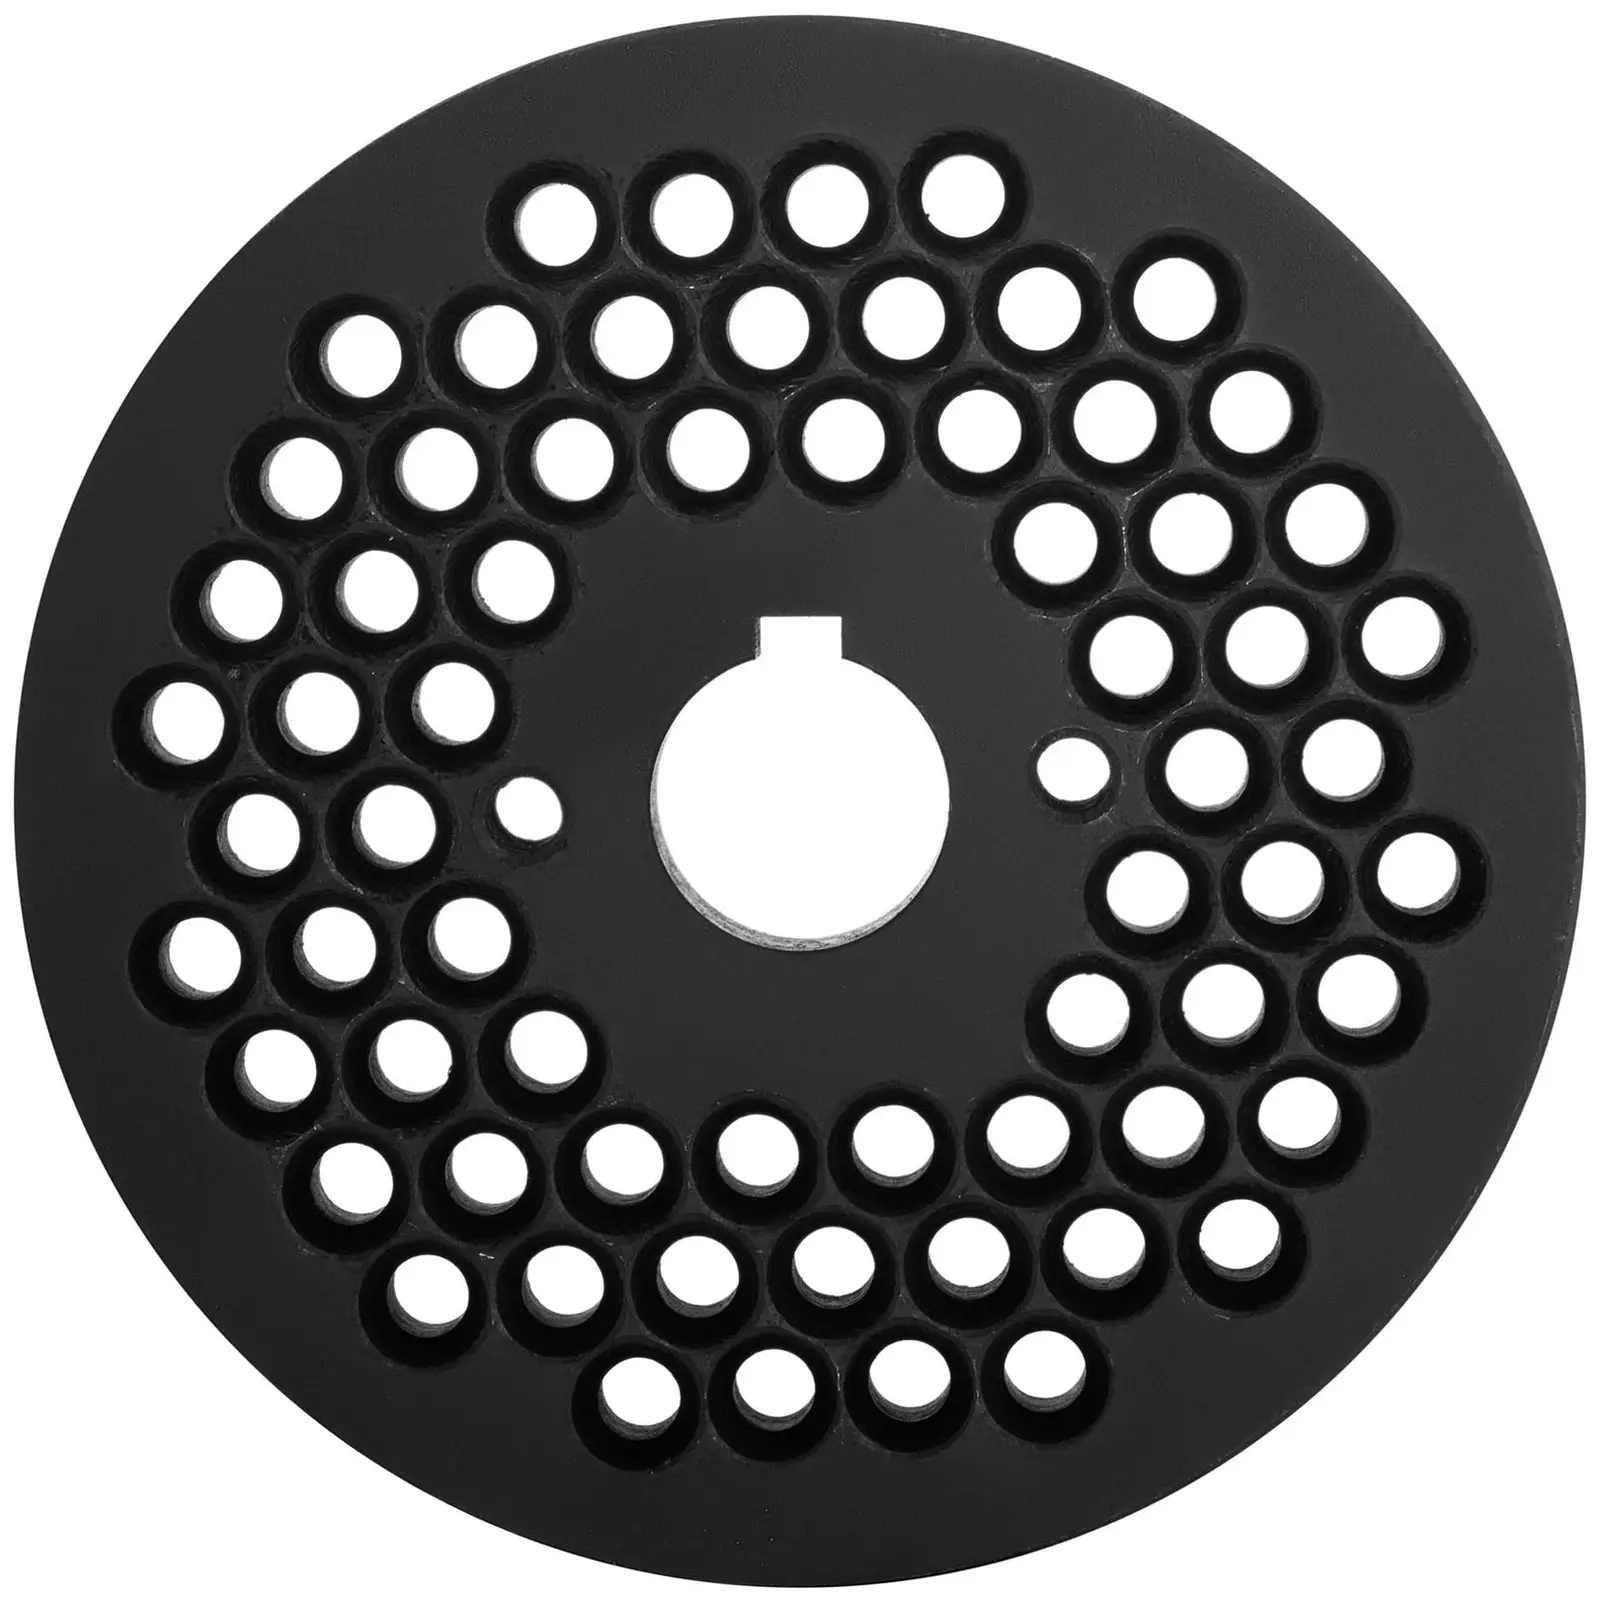 Matrise til pelletspresse for WIE-PM-2500 (10280044) - Ø 8 mm